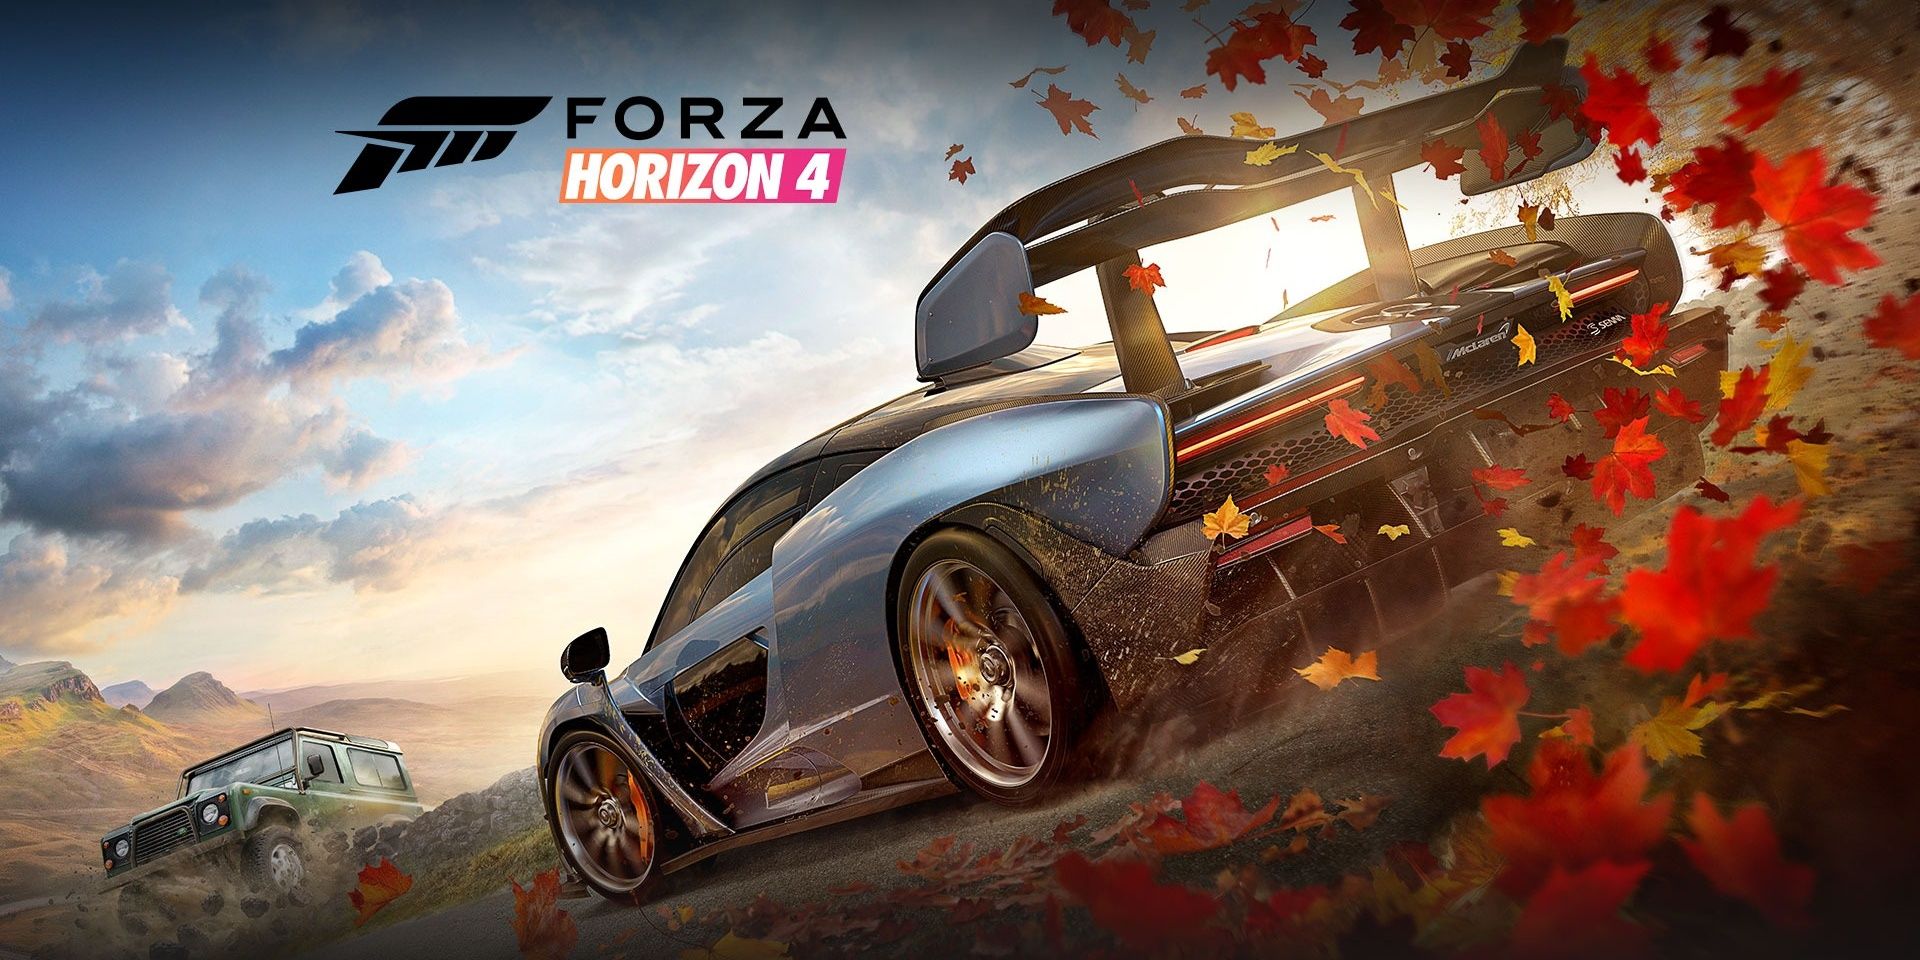 Arte da capa do Forza Horizon 4